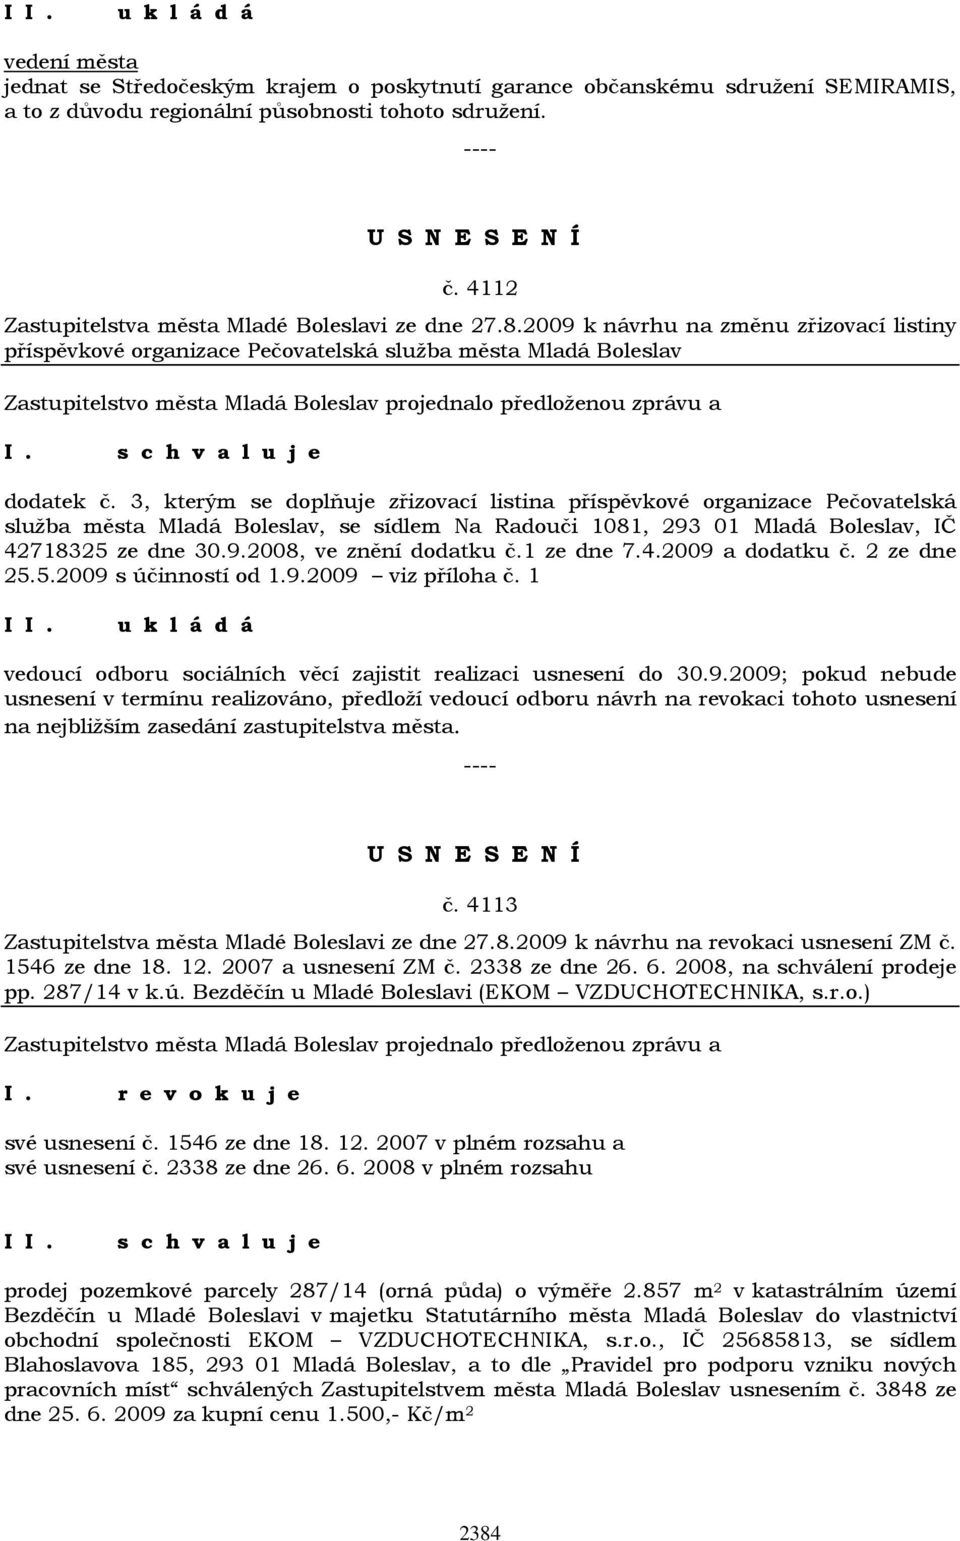 3, kterým se doplňuje zřizovací listina příspěvkové organizace Pečovatelská služba města Mladá Boleslav, se sídlem Na Radouči 1081, 293 01 Mladá Boleslav, IČ 42718325 ze dne 30.9.2008, ve znění dodatku č.